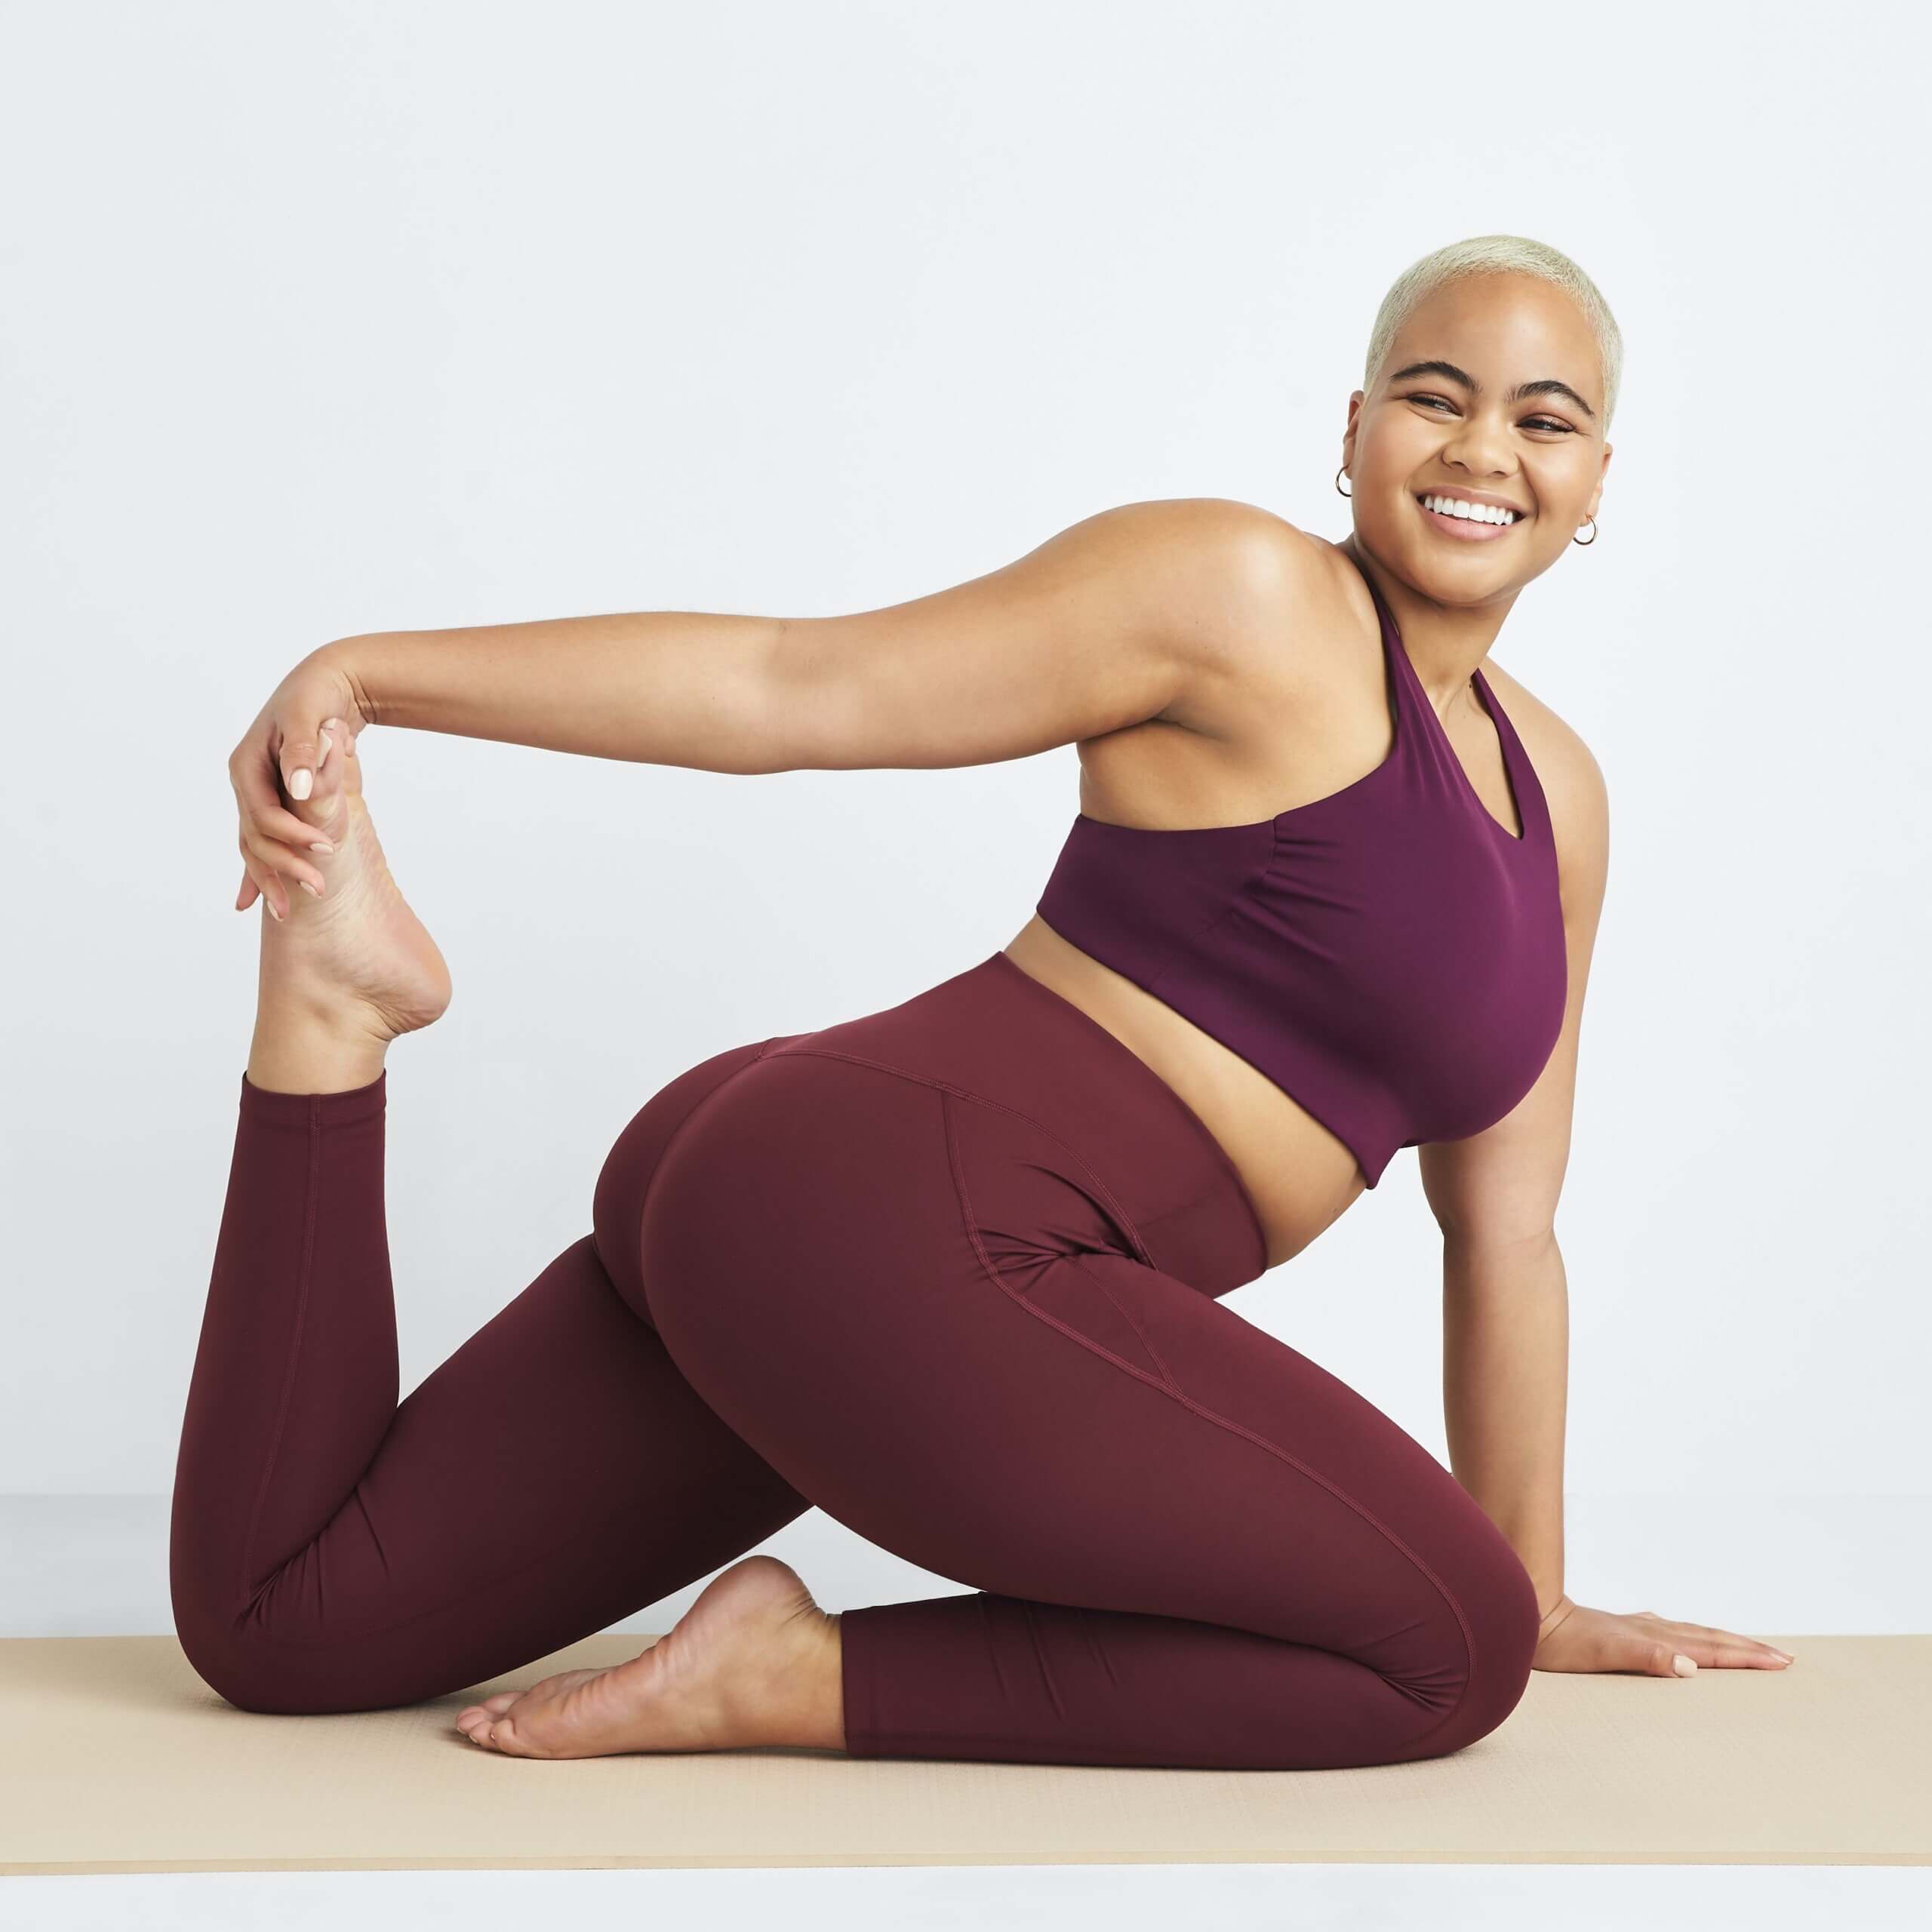 Yoga Tops - Women's Yoga Clothes